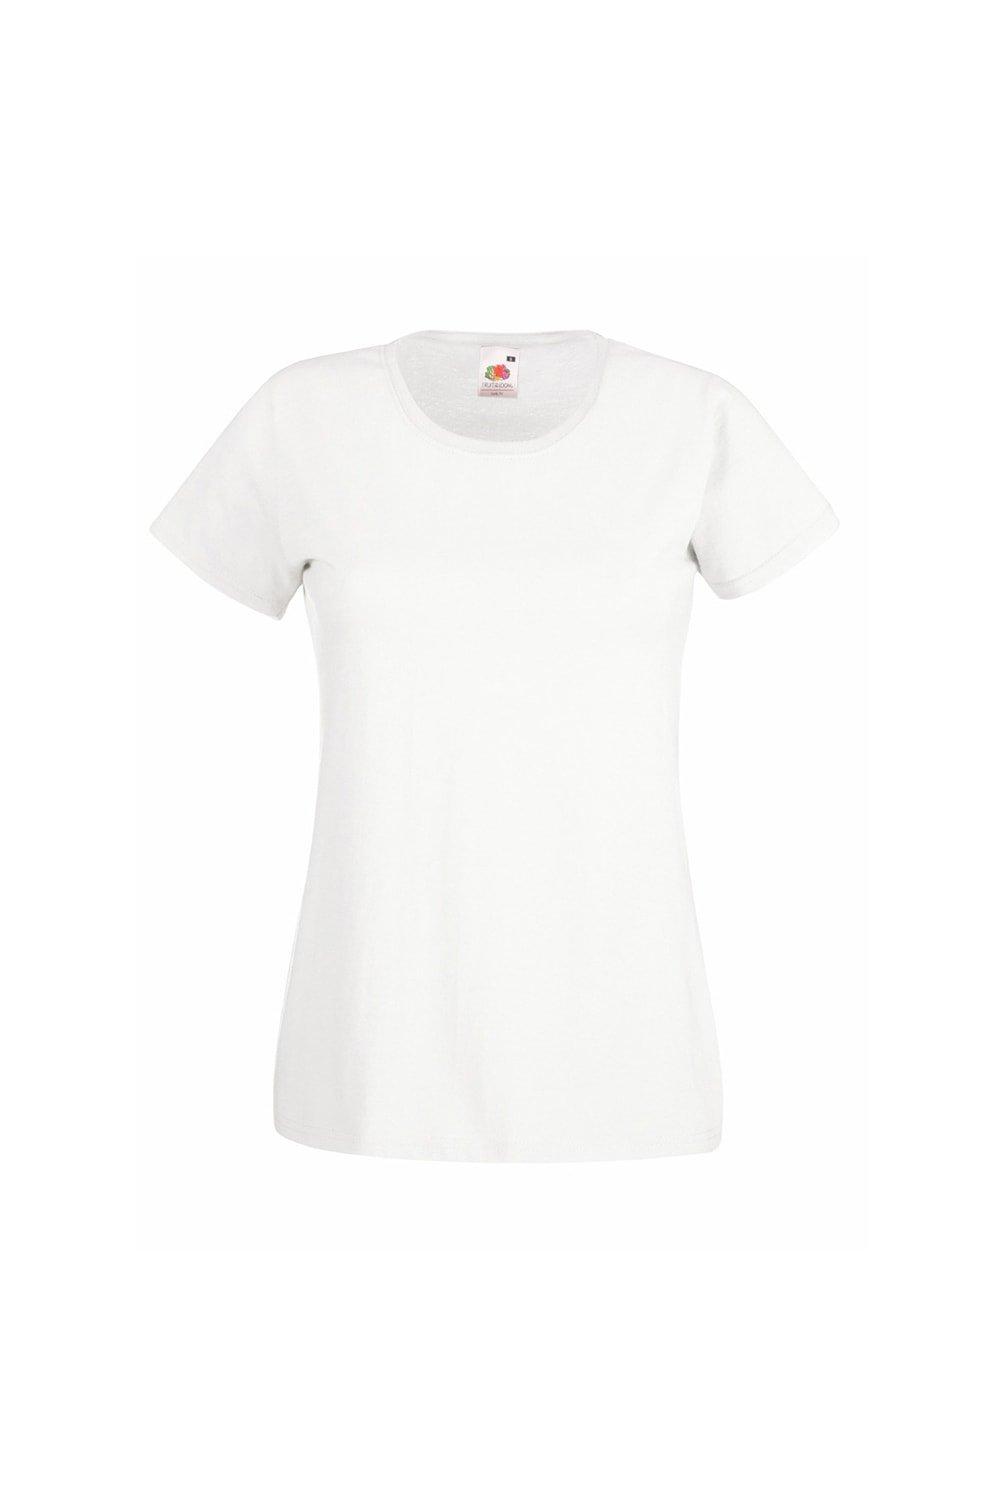 Повседневная футболка с короткими рукавами Value Universal Textiles, белый футболка женская mia серый меланж размер xl